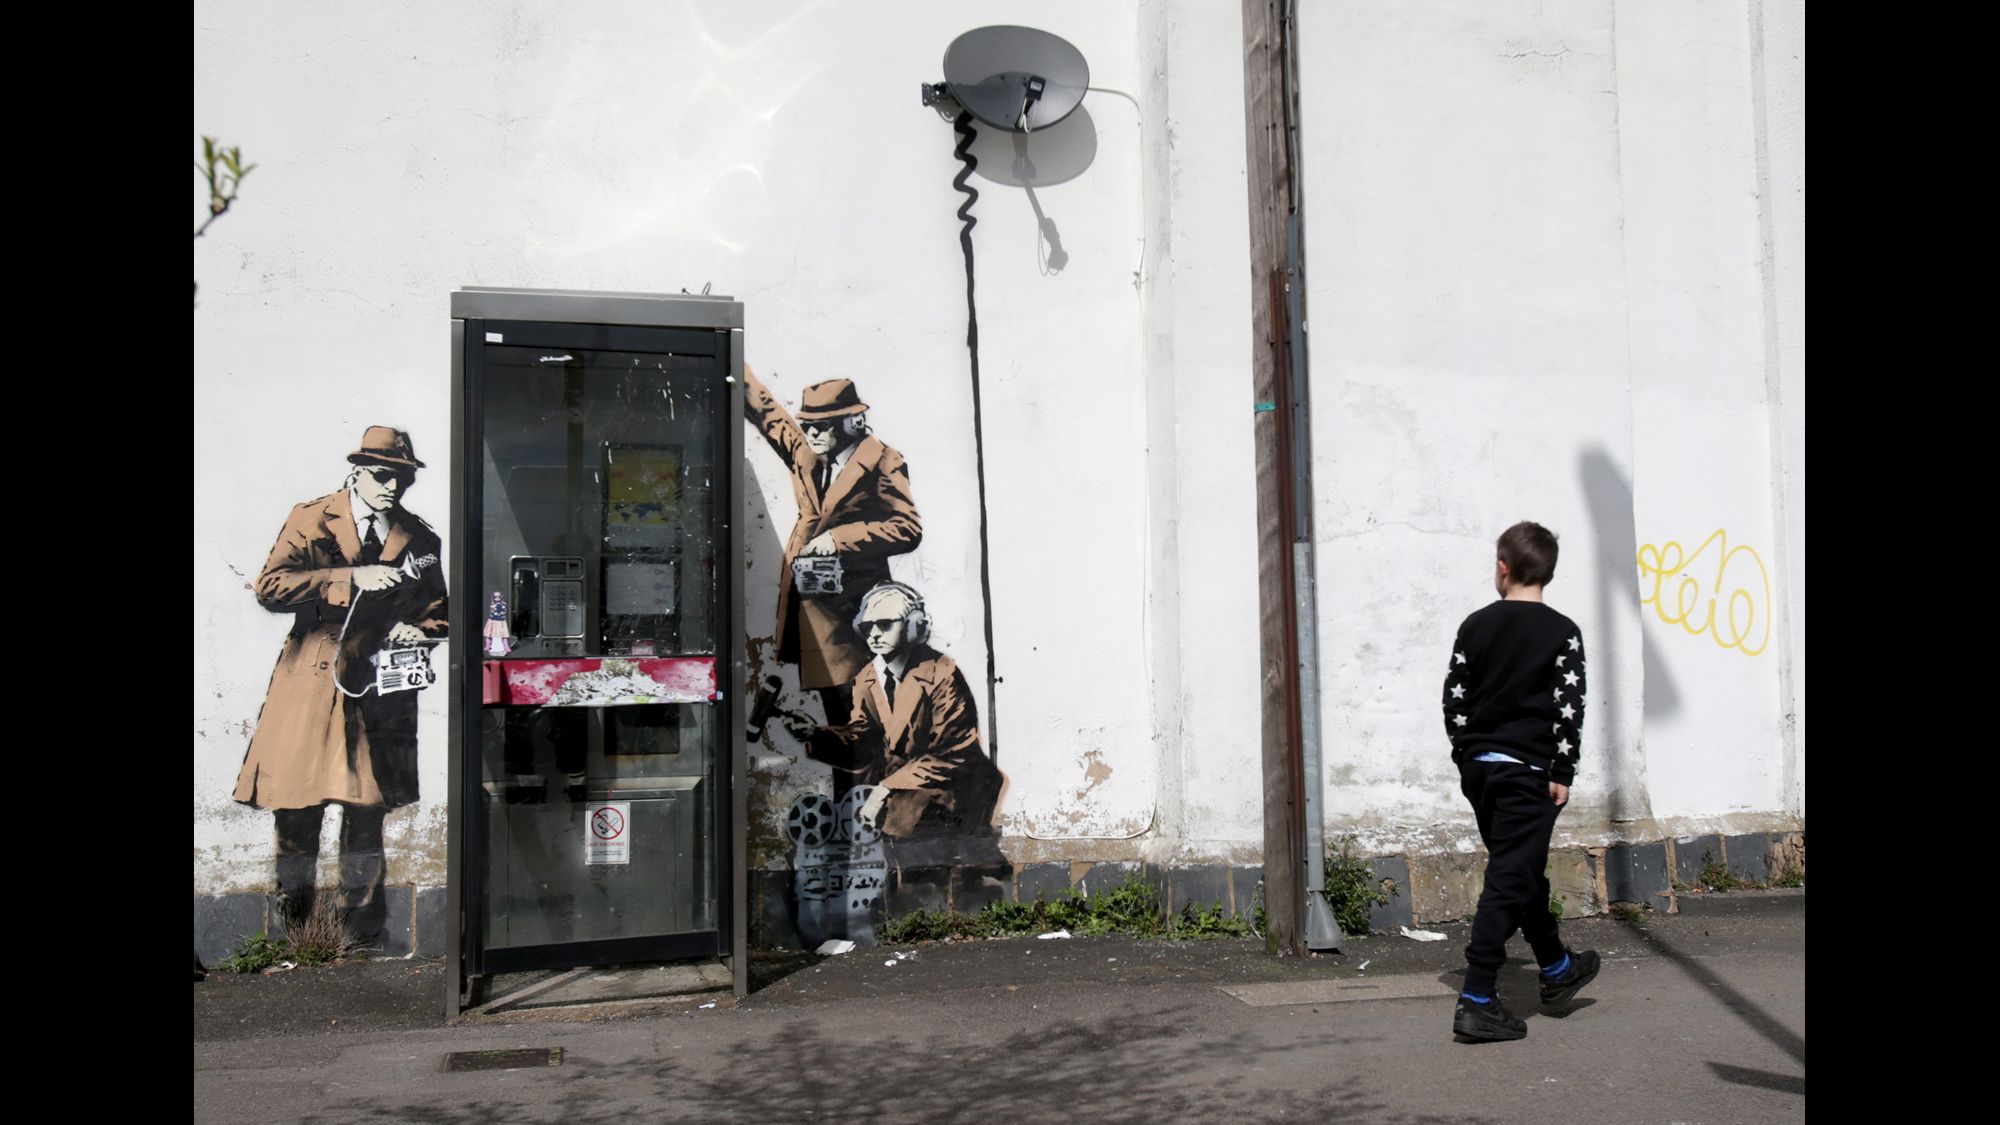 Seven-Figure Banksy <em>Spy Booth</em> Vandalized